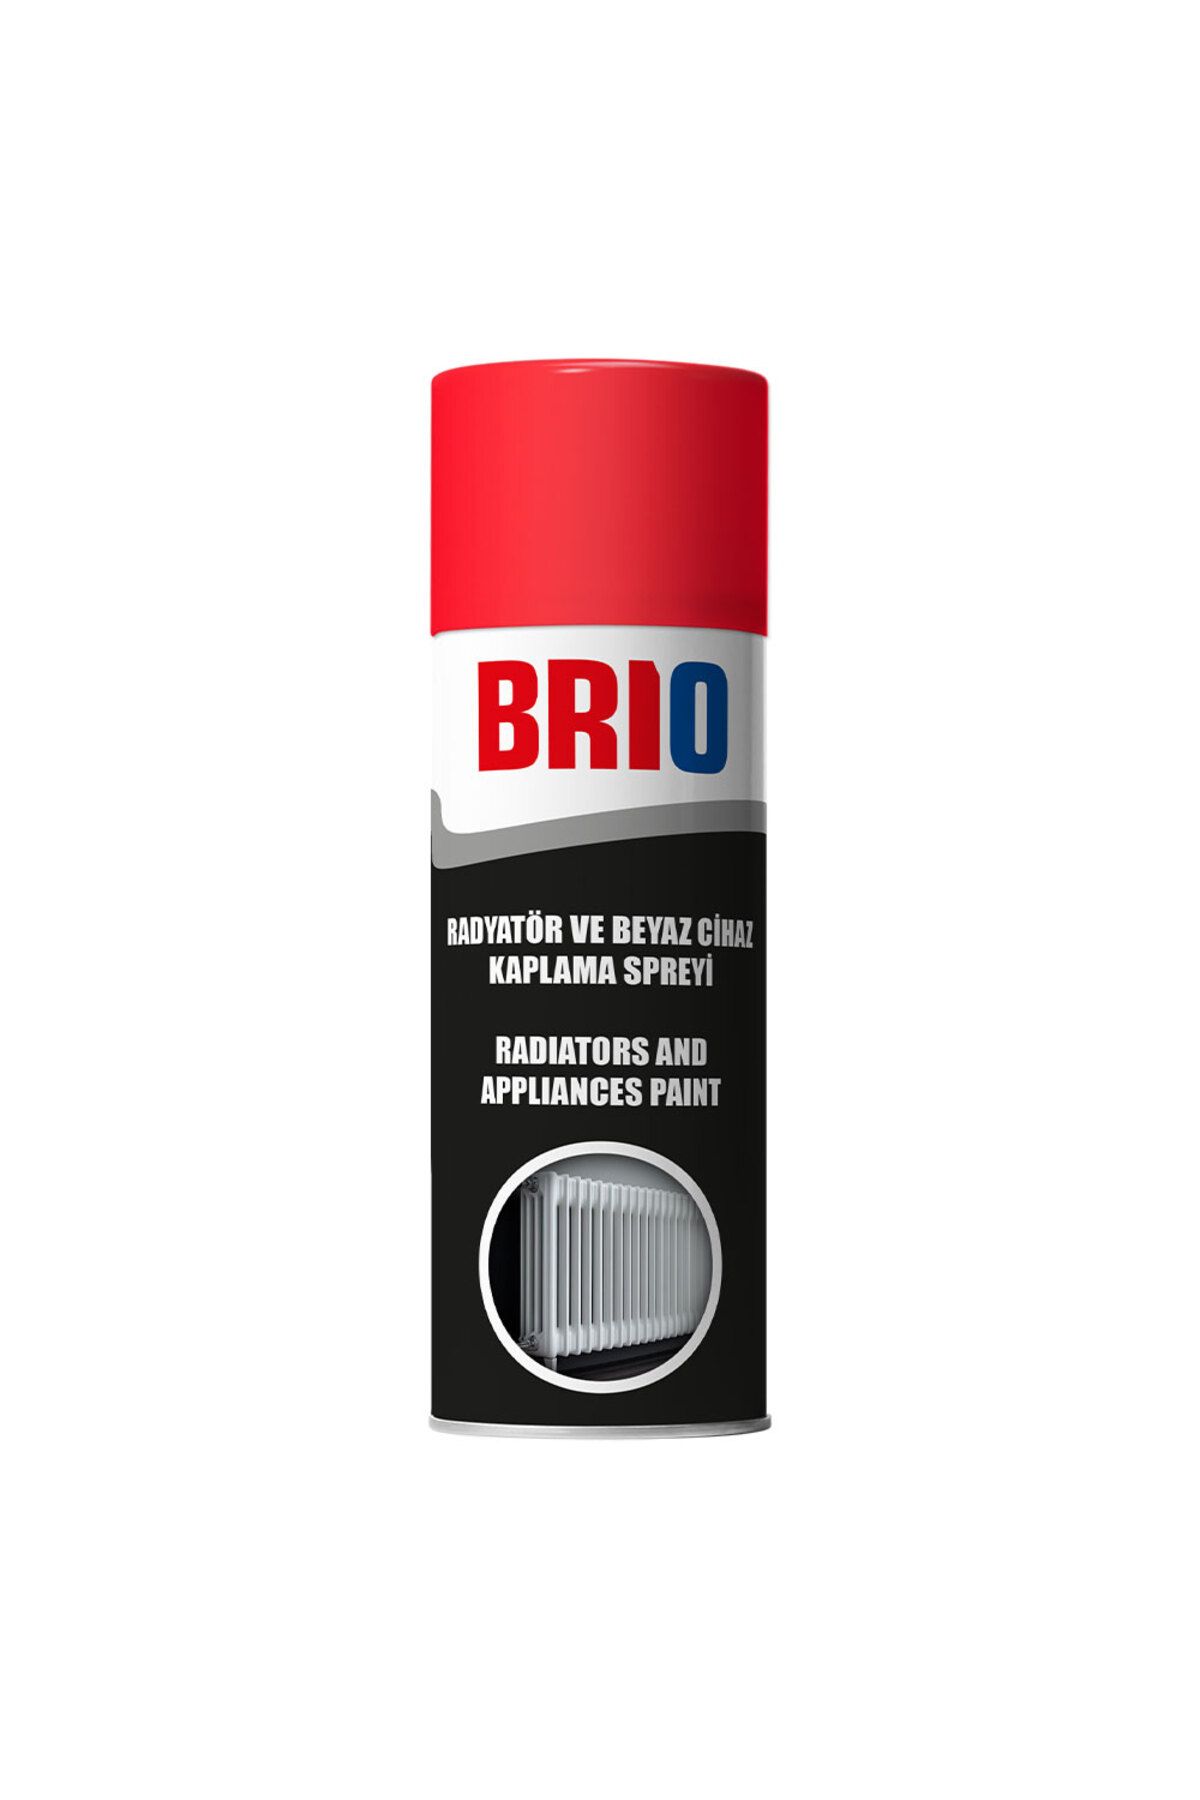 Brio Radyatör Ve Beyaz Cihaz, Beyaz Eşya Kaplama Spreyi 400 ml Inci Beyazı